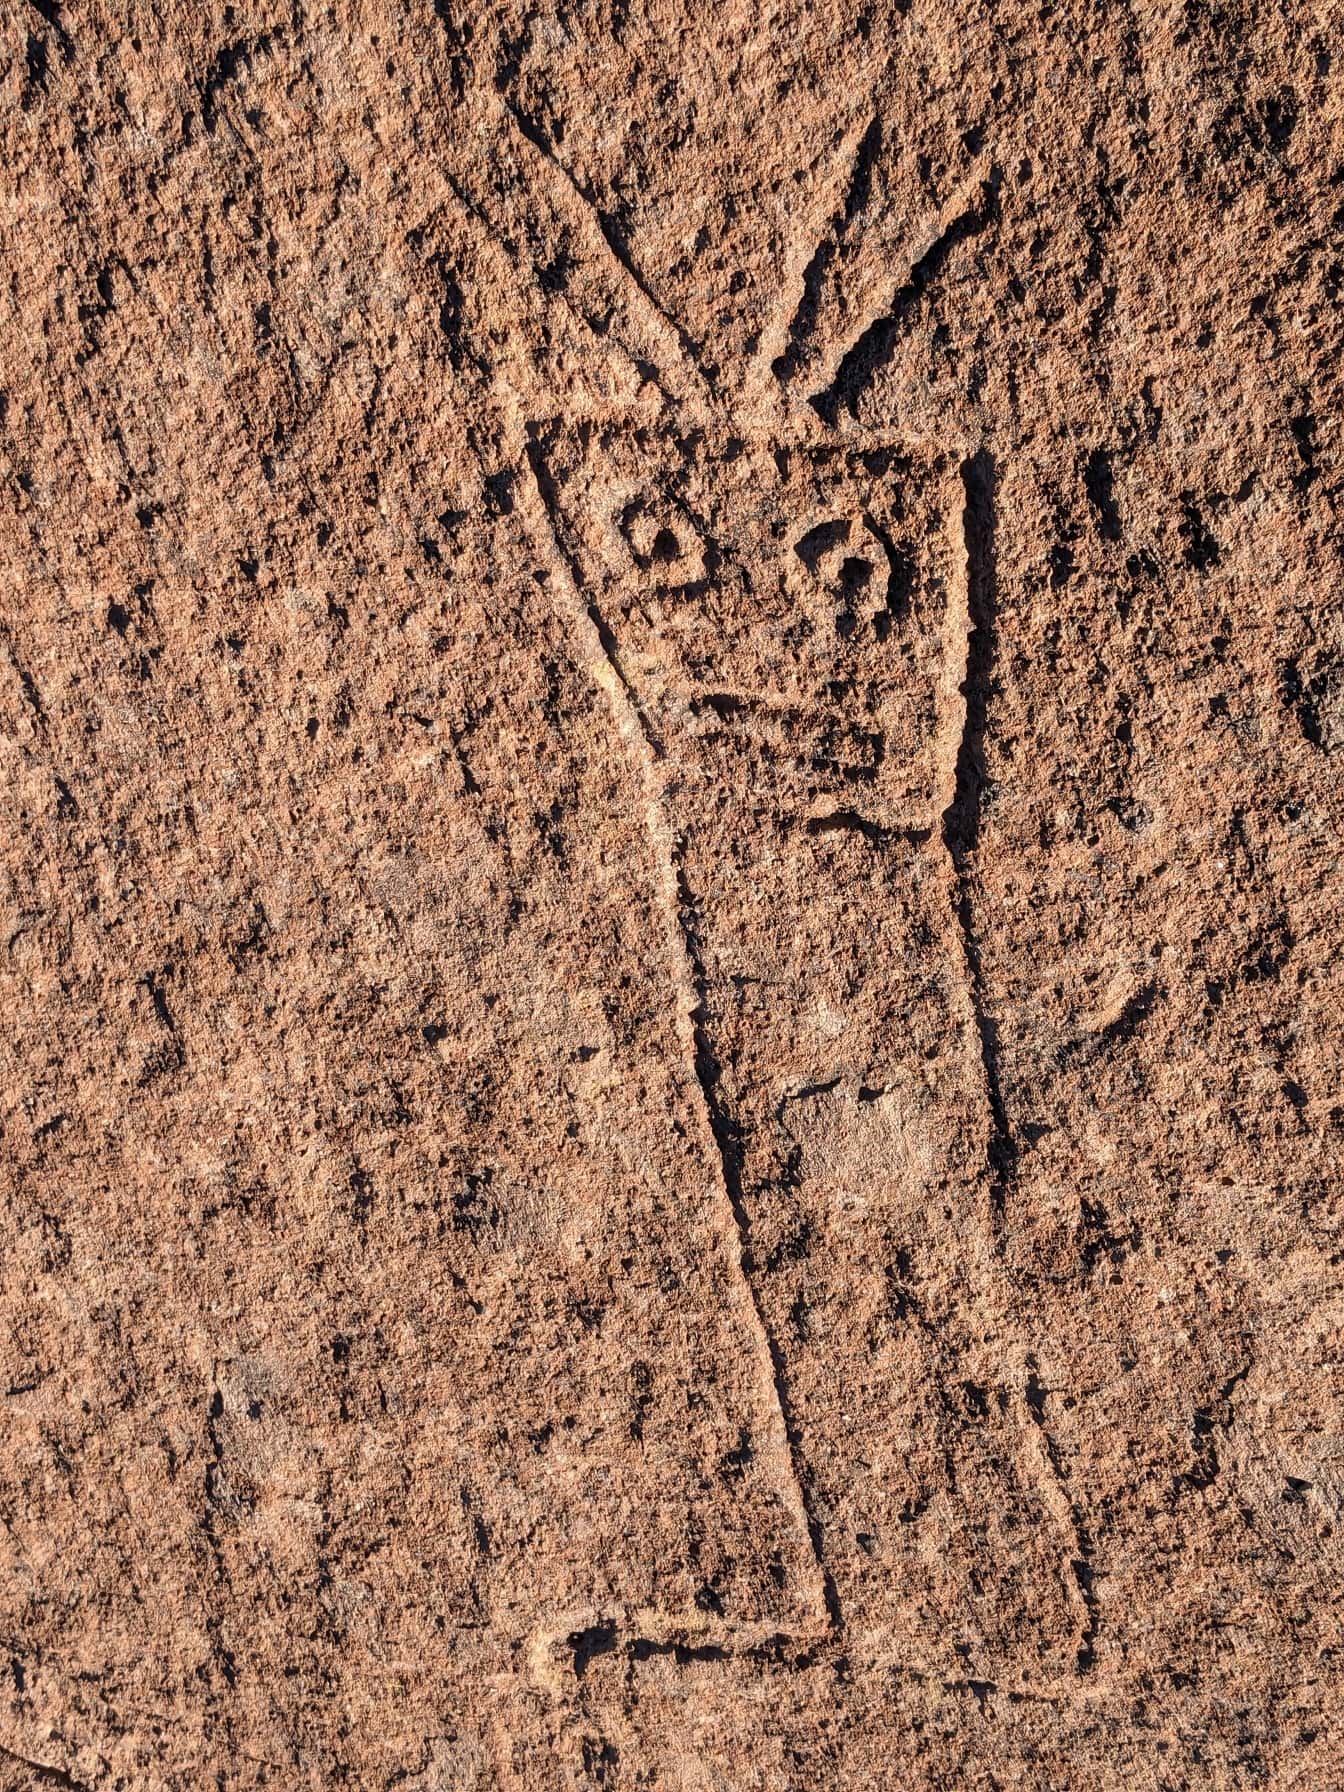 Gamle naive steinutskjæringer, helleristninger i Sør-Amerika kan være fra neolittperioden